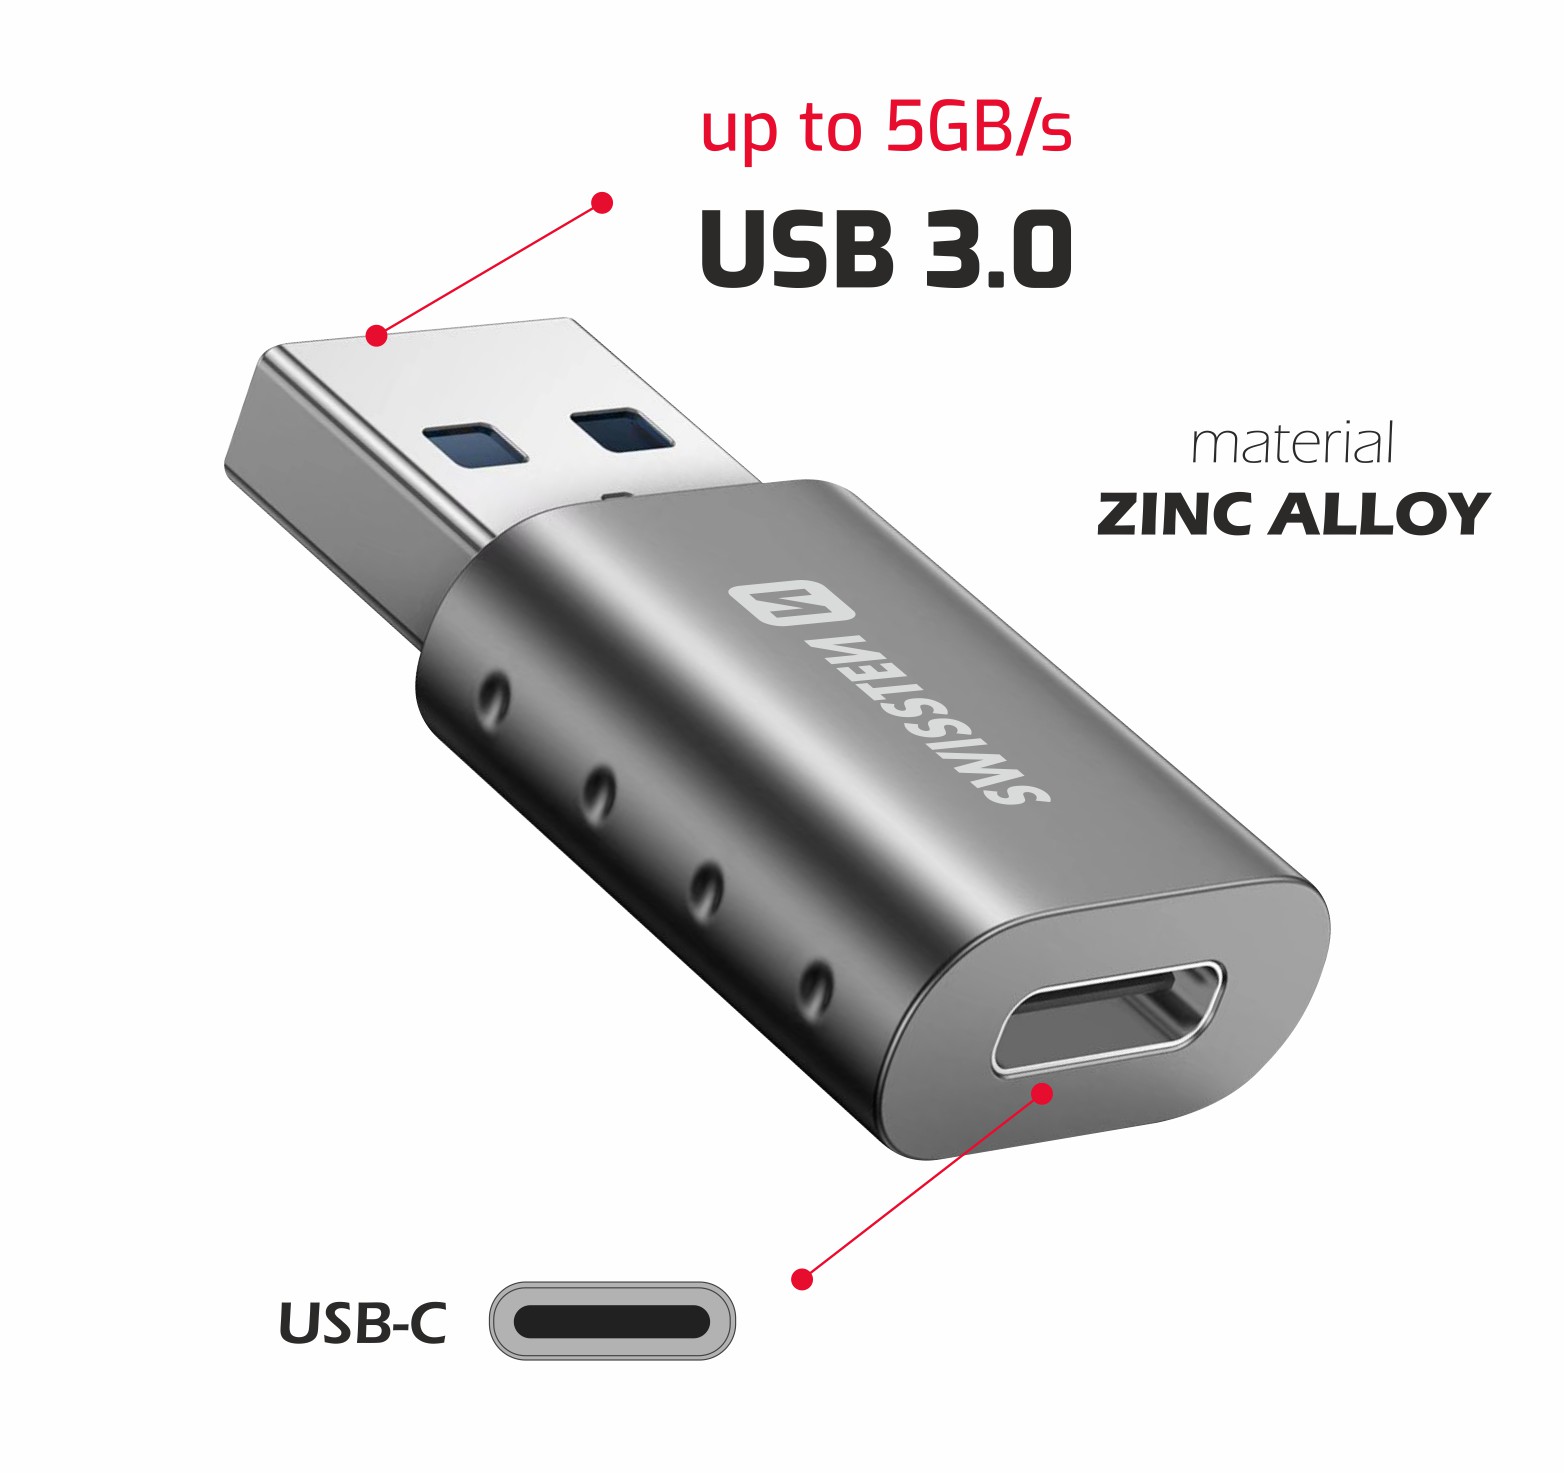 Adaptor Swissten USB-A (M)/USB-C (F) thumb